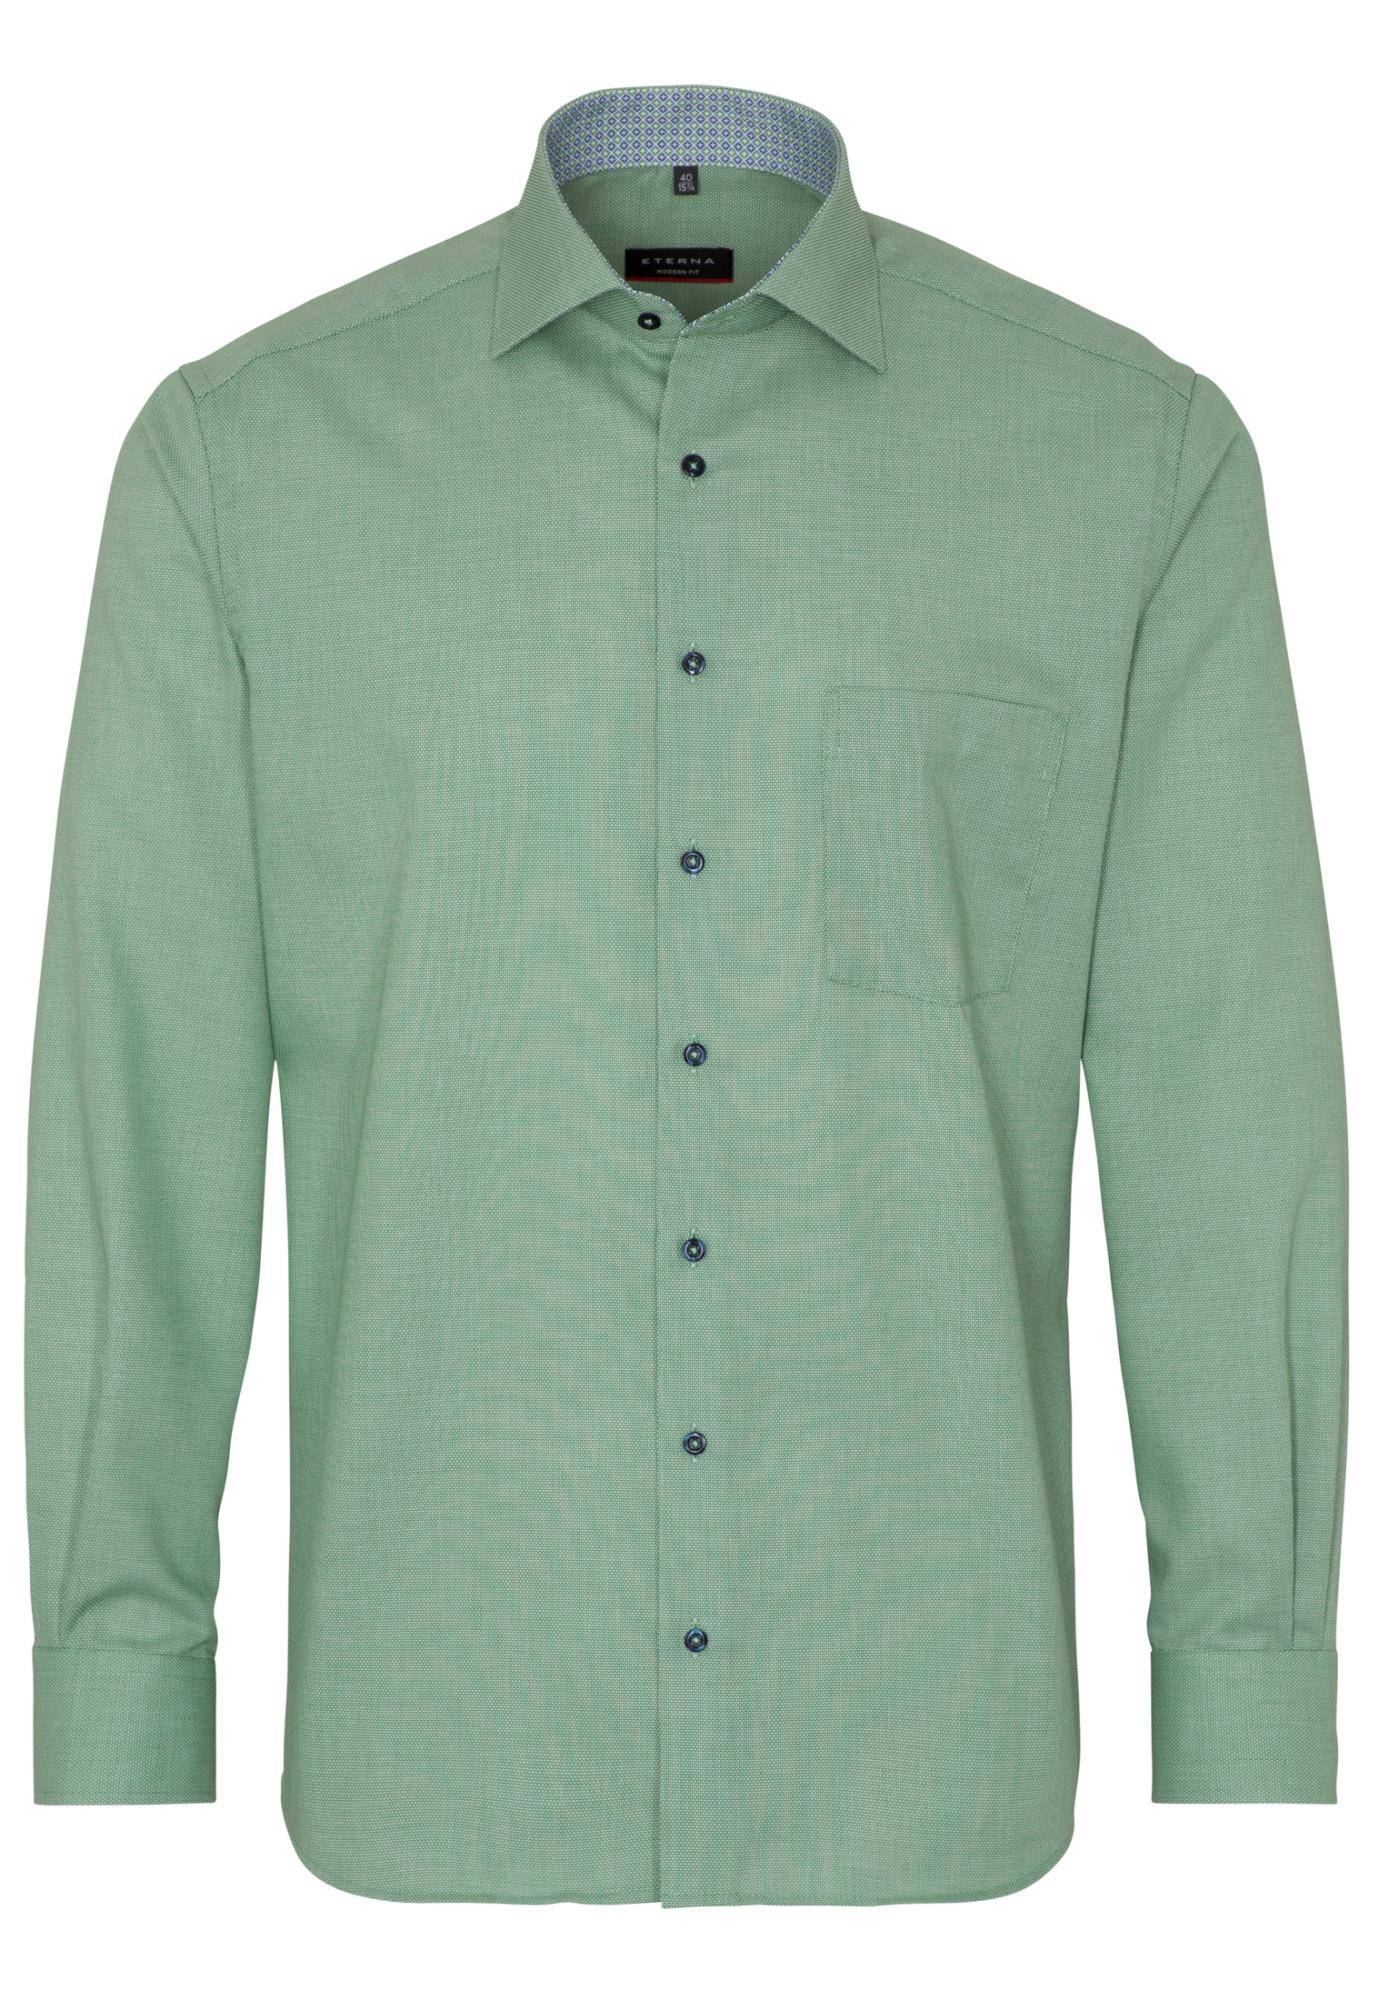 Мужская рубашка ETERNA, зеленая, цвет зеленый, размер 50 - фото 1